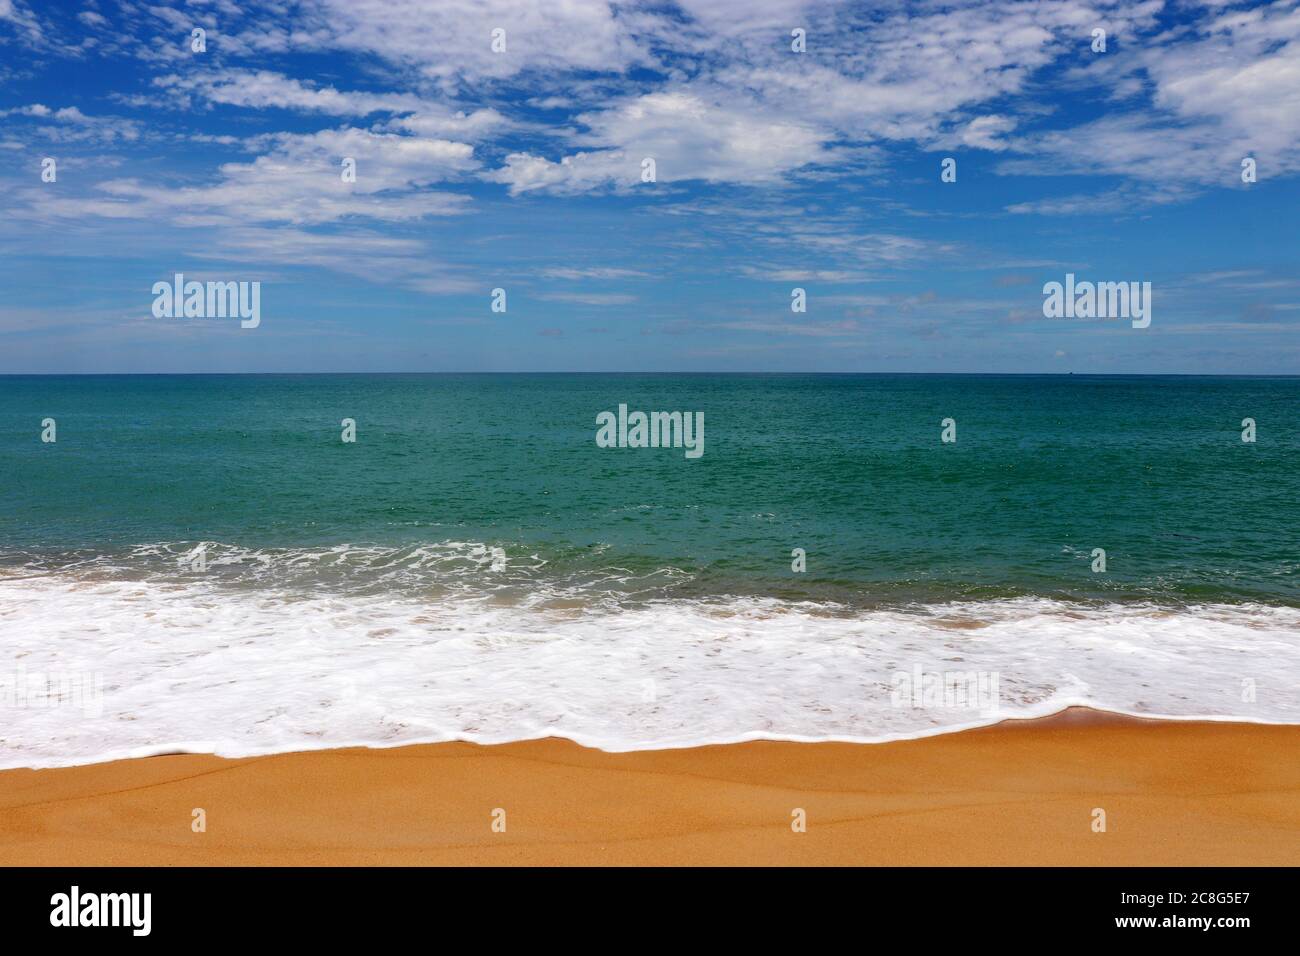 Surfez sur une plage de sable tropical, vue panoramique sur la côte de mer vide avec sable jaune et vague émeraude avec mousse blanche. Paysage pittoresque avec ciel bleu Banque D'Images